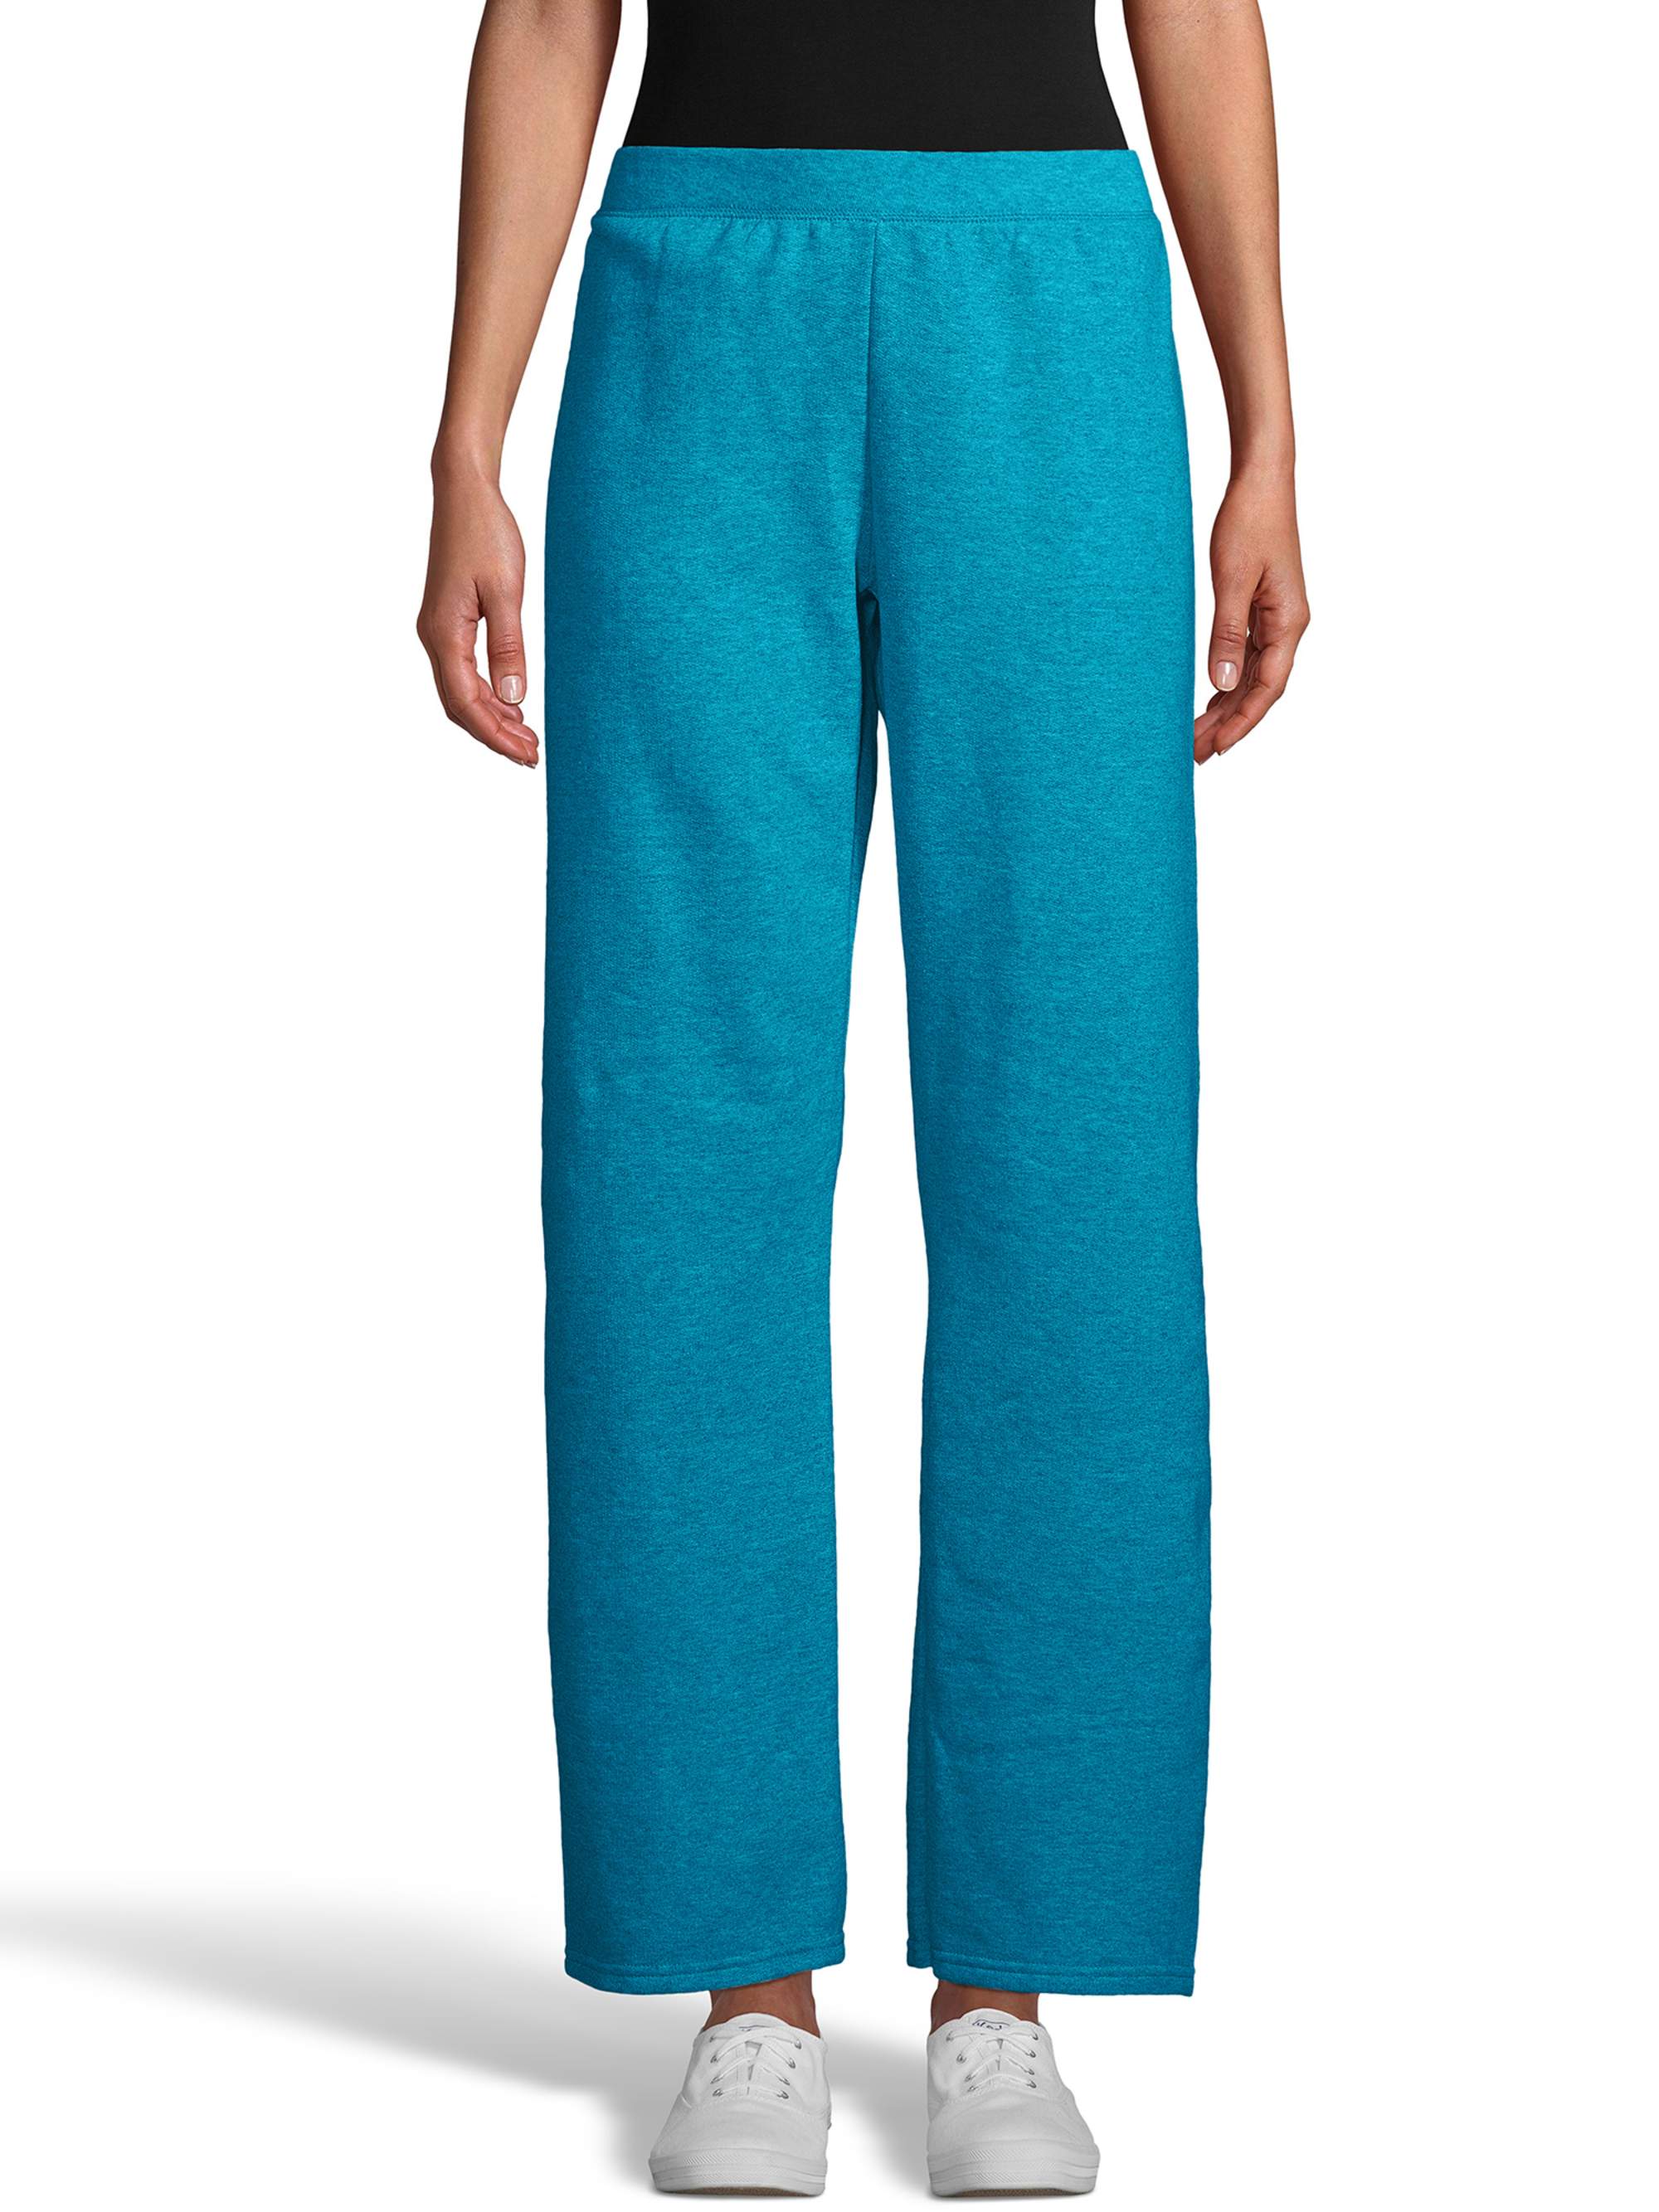 Hanes ComfortSoft EcoSmart Women's Open Bottom Fleece Sweatpants, Sizes S-XXL and Petite - image 1 of 6